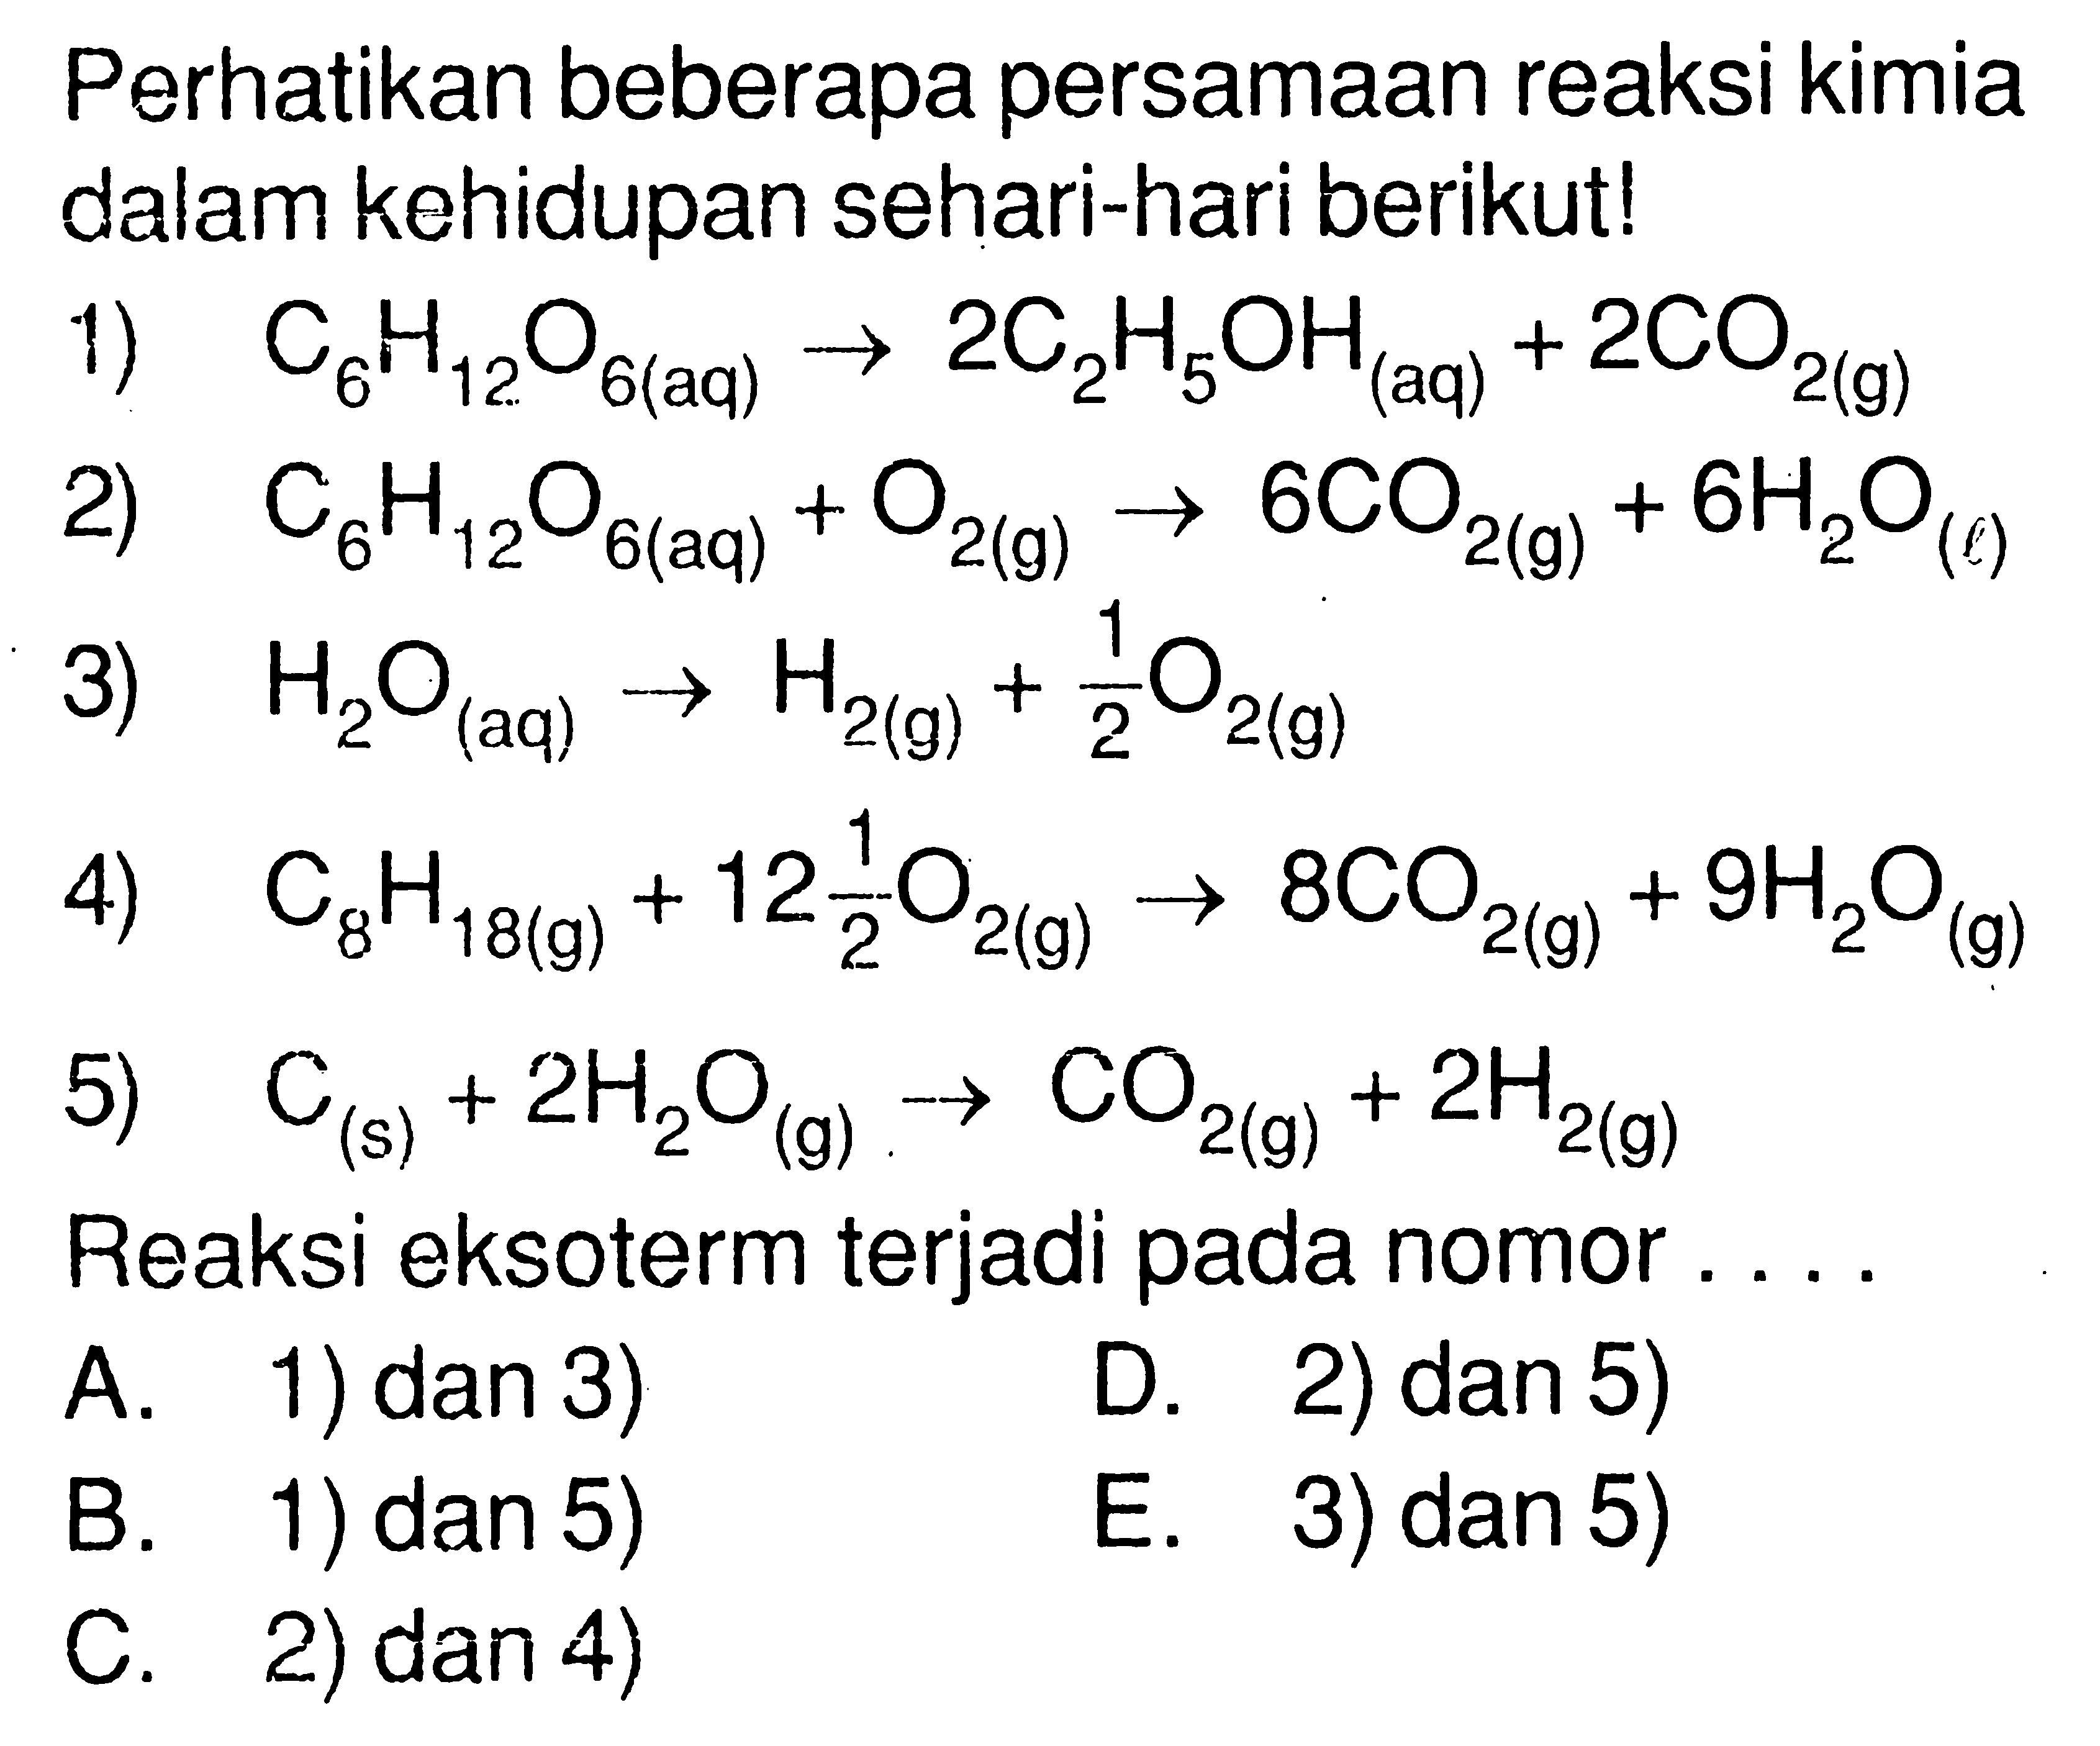 Perhatikan beberapa persamaan reaksi kimia dalam kehidupan sehari-hari berikut! 1) C6H12O6( aq ) -> 2C2H5OH(aq) + 2CO2(g) 2) C6 H12O6(aq) + O2(g) -> 6CO2(g) + 6H2O(l) 3) H2O(aq) -> H2(g) + 1/2 O2(g) 4) C8H18(g) + 12 1/2 O2(g) -> 8CO2(g) + 9 H2O(g) 5) C(s) + 2H2O(g) -> CO2(g) + 2H2(g) Reaksi eksoterm terjadi pada nomor.... 